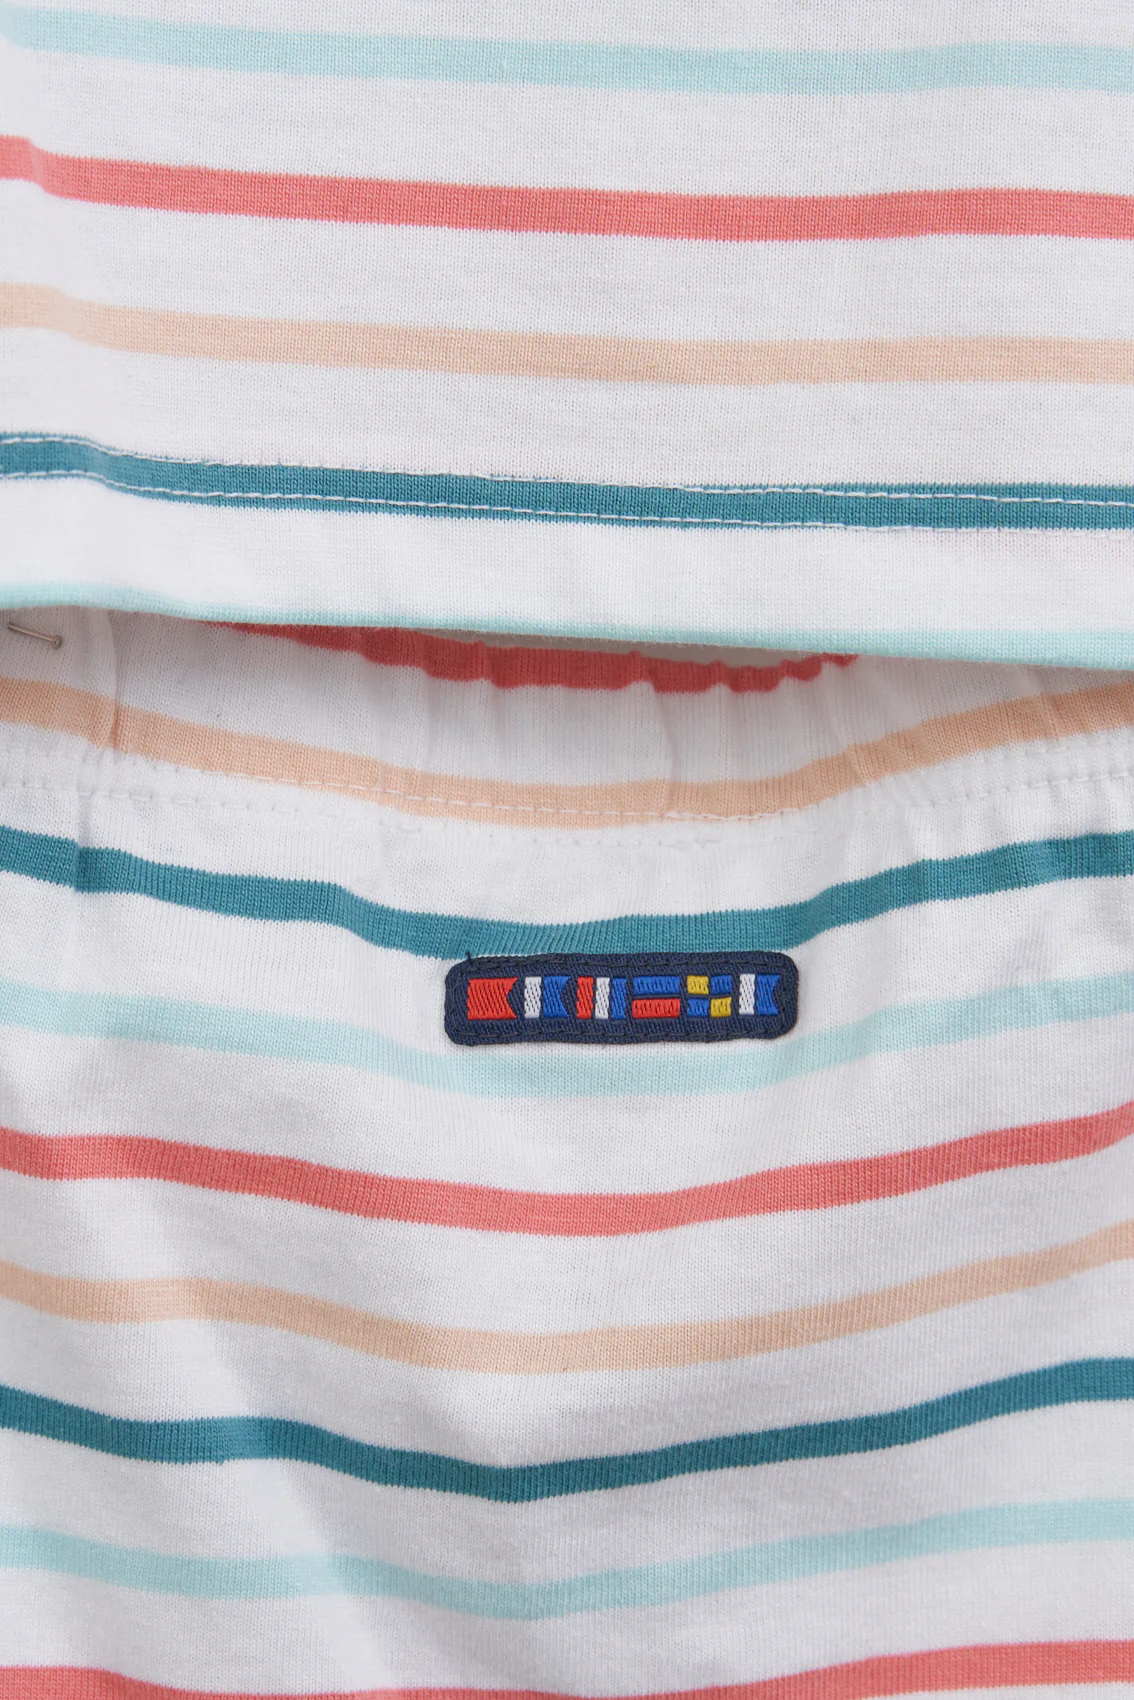 Batela Striped Shorts & T-shirt Set - Multicolour